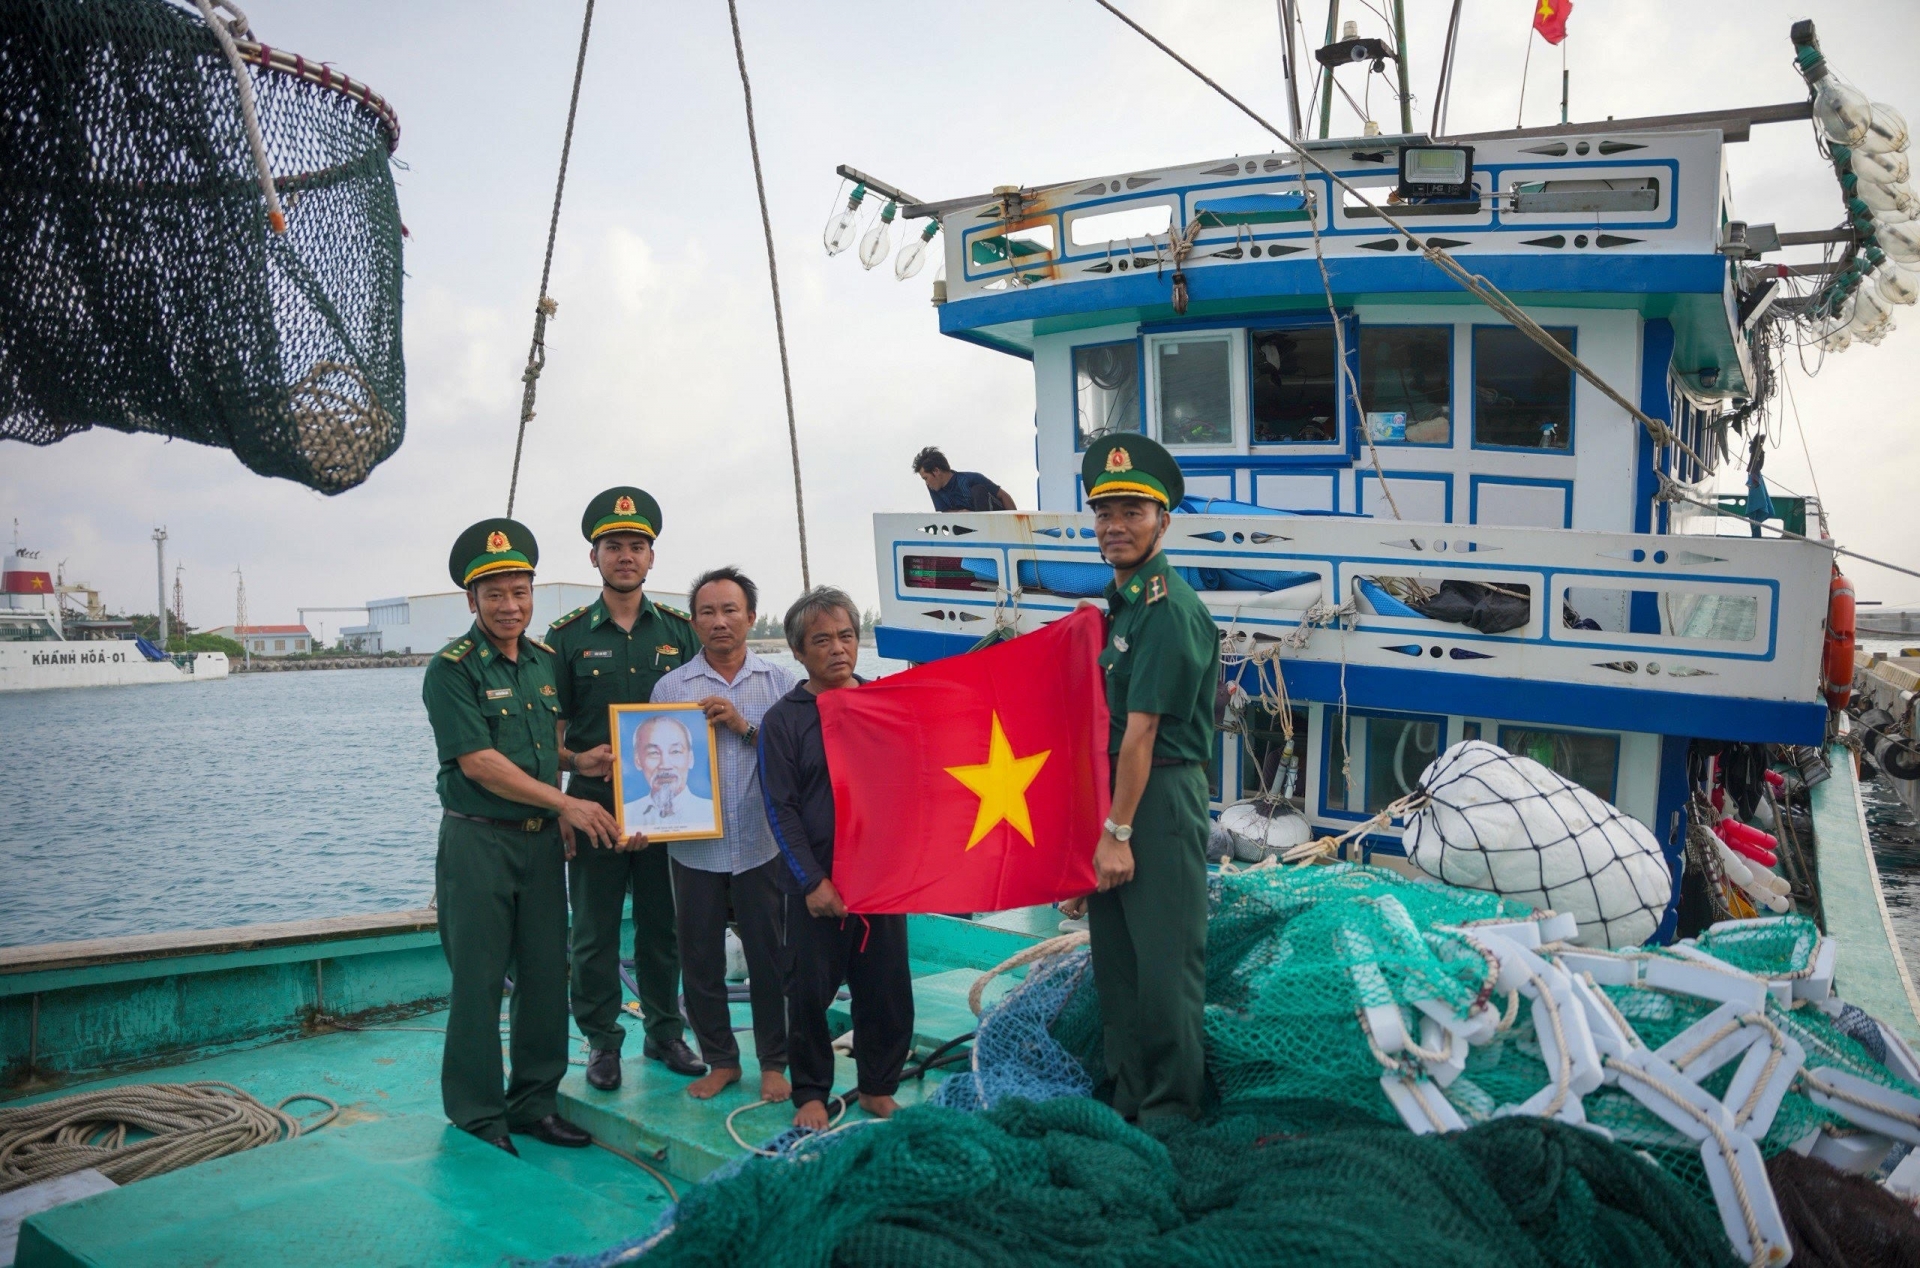 长沙岛边防站干部向长沙岛海上渔民赠送胡伯伯画像和国旗